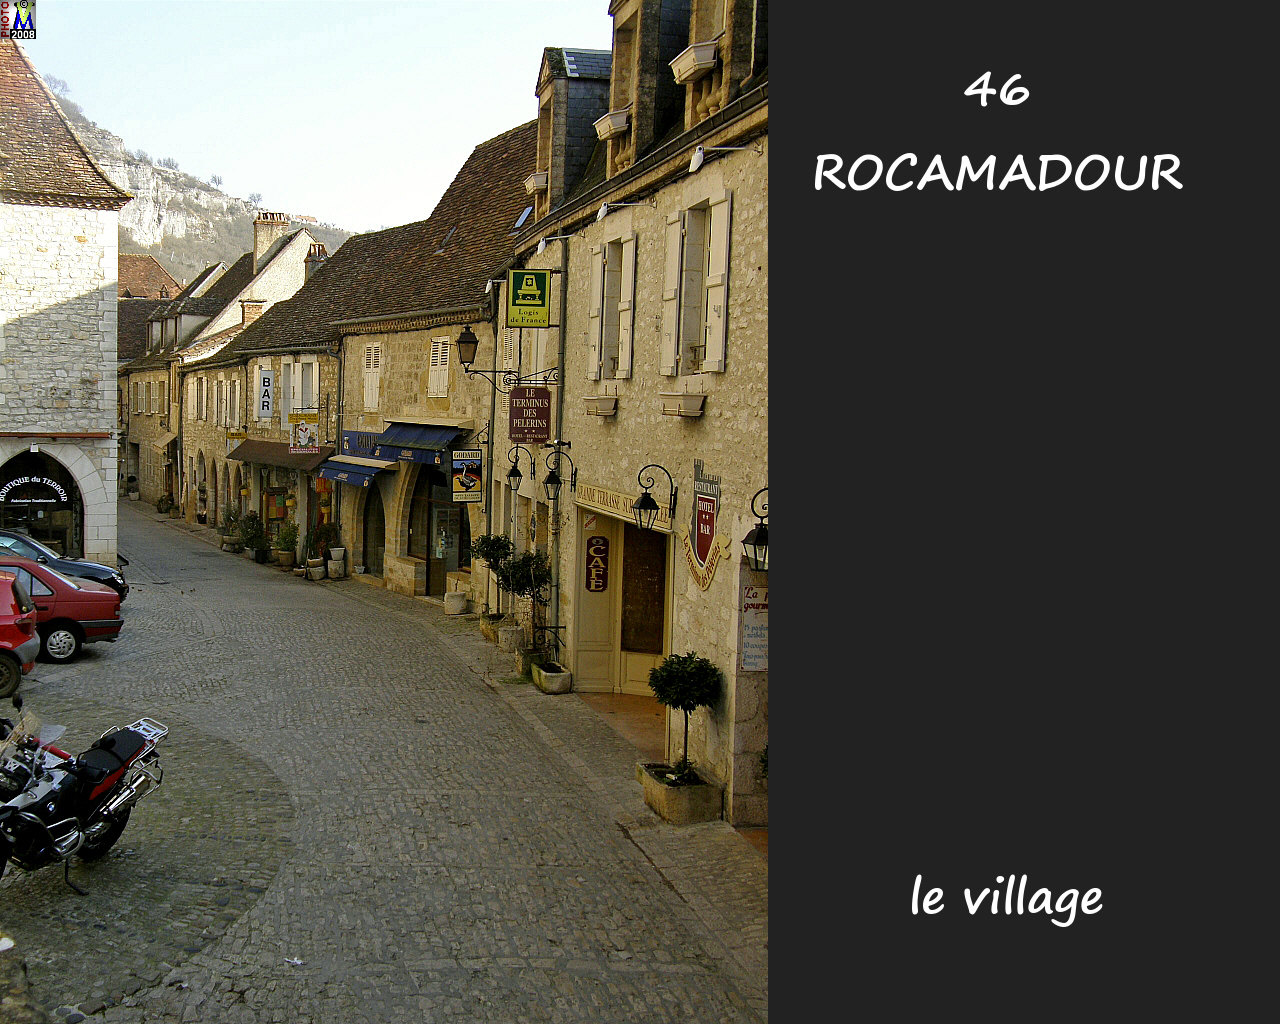 46ROCAMADOUR_village_142.jpg